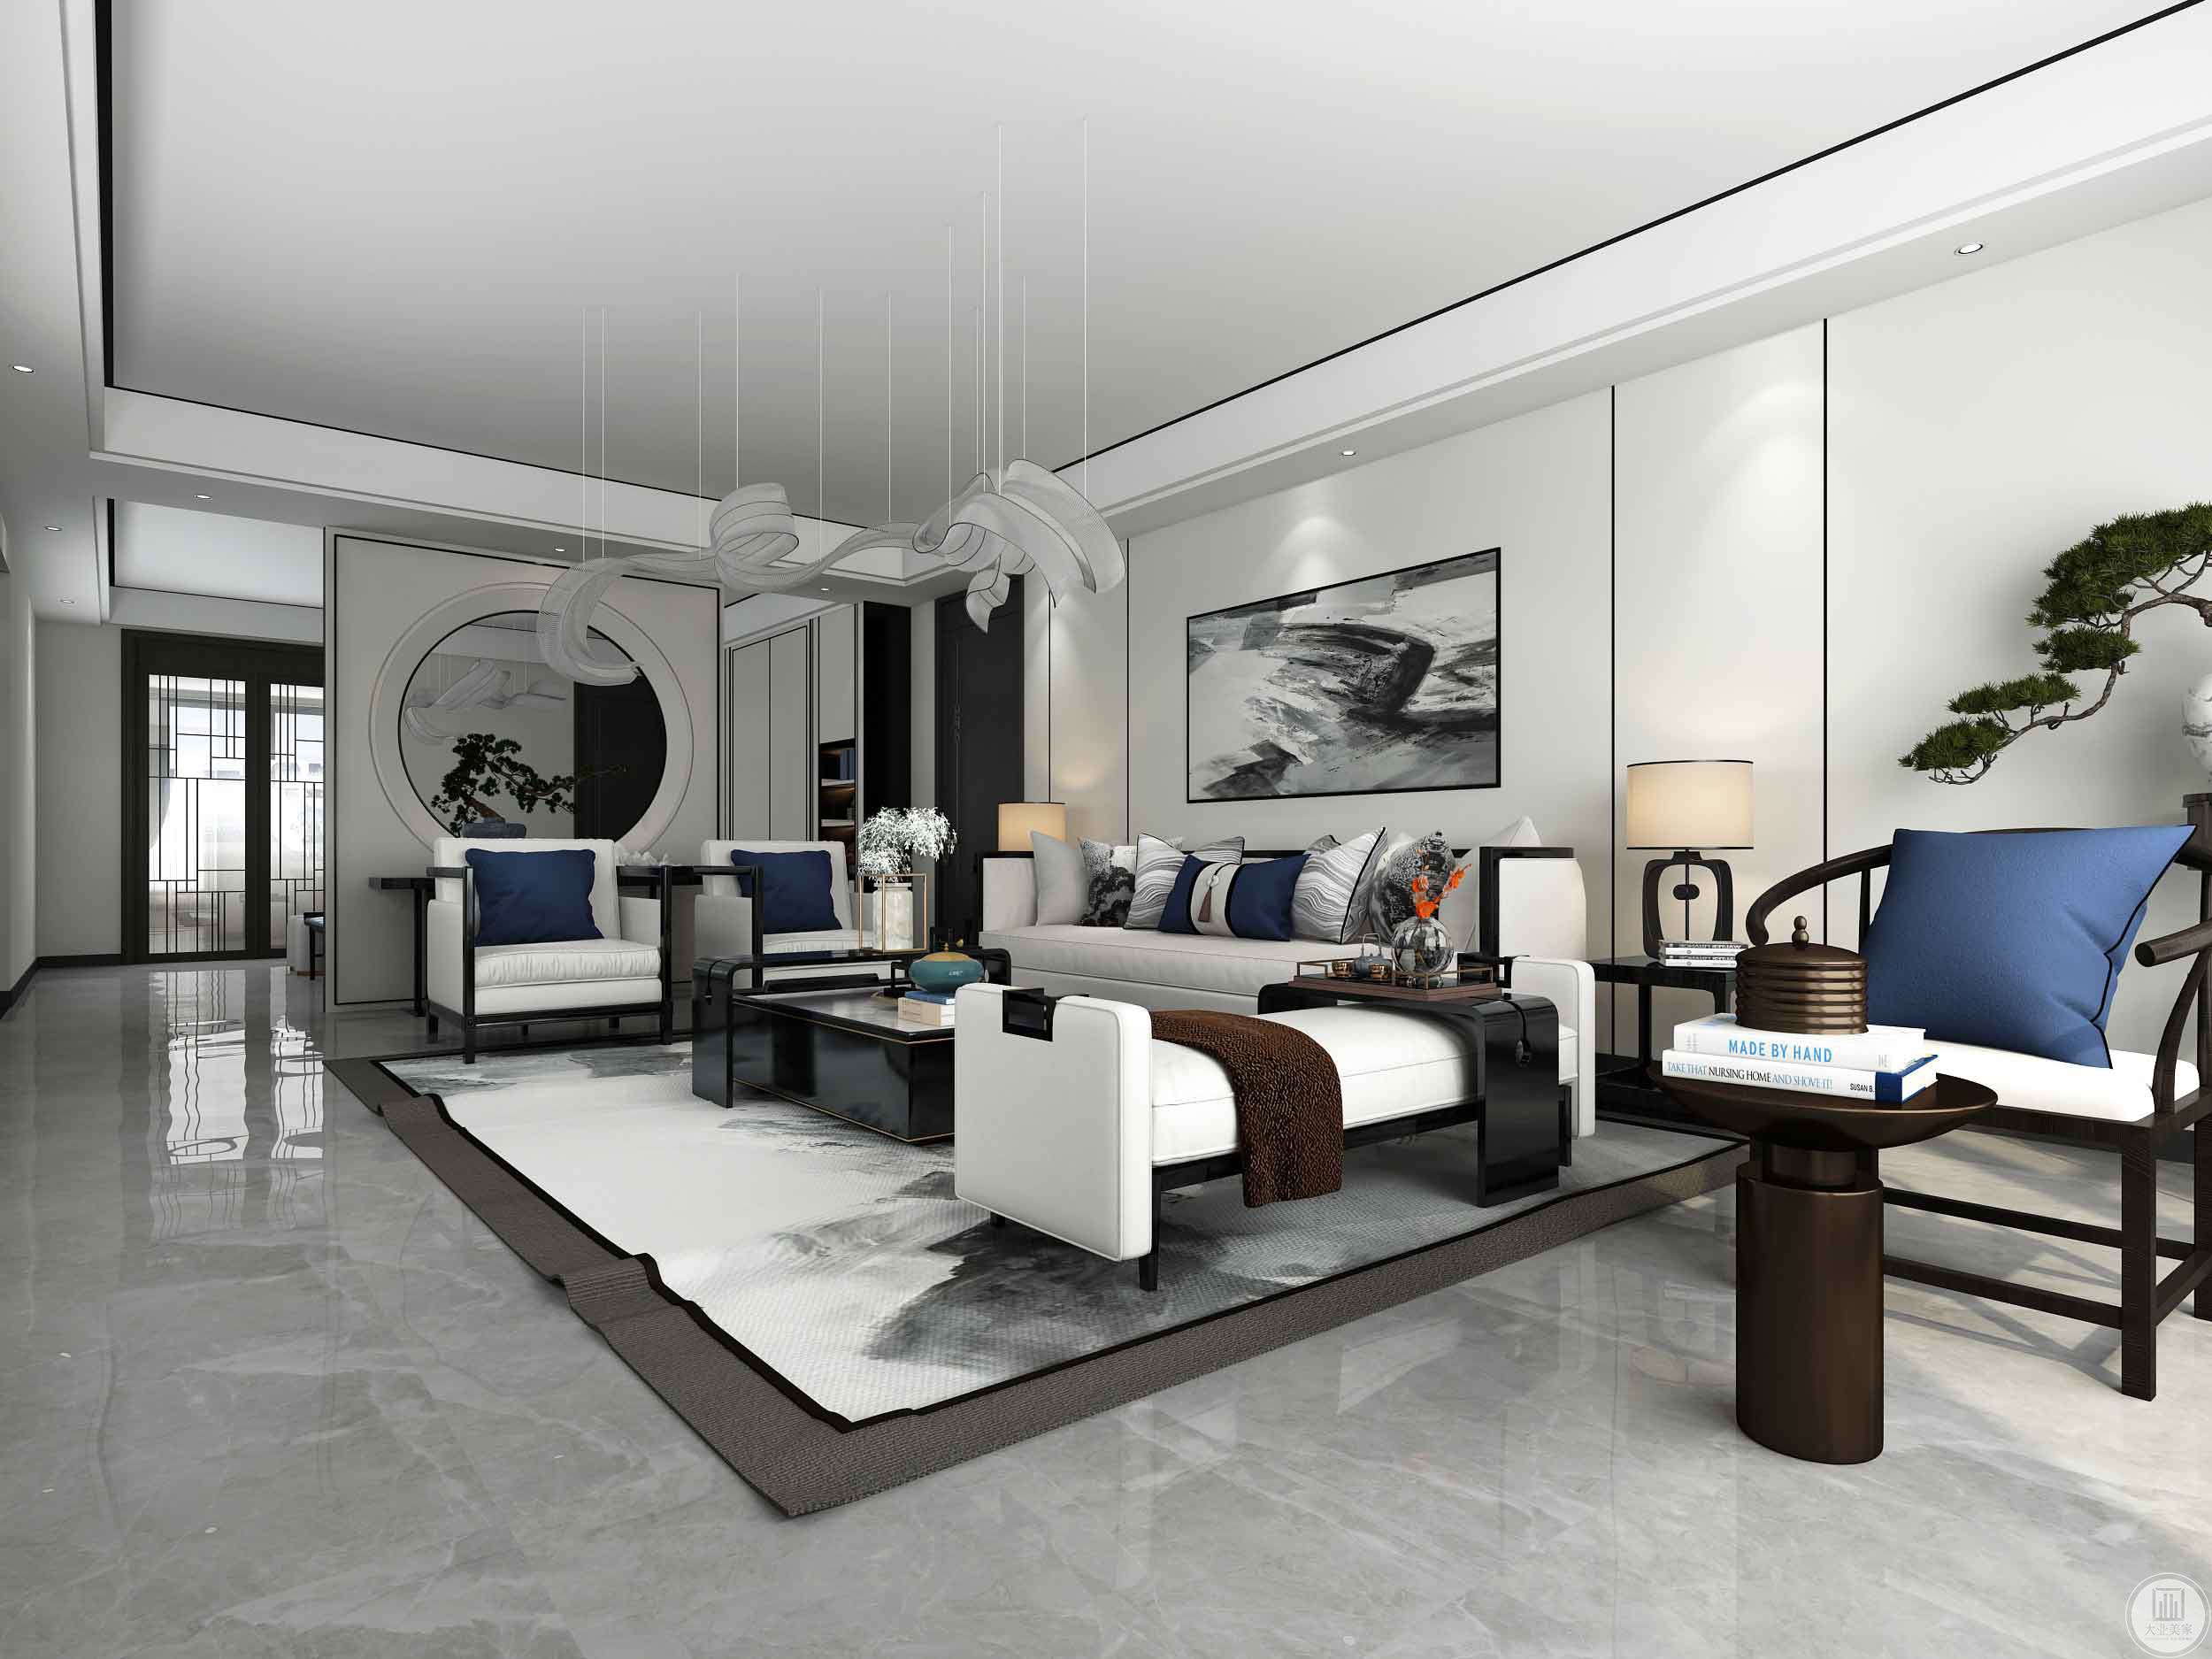 客厅大多采用白色为主，沙发采用白色和蓝色搭配，另外靠垫的面料和质感也很重要。